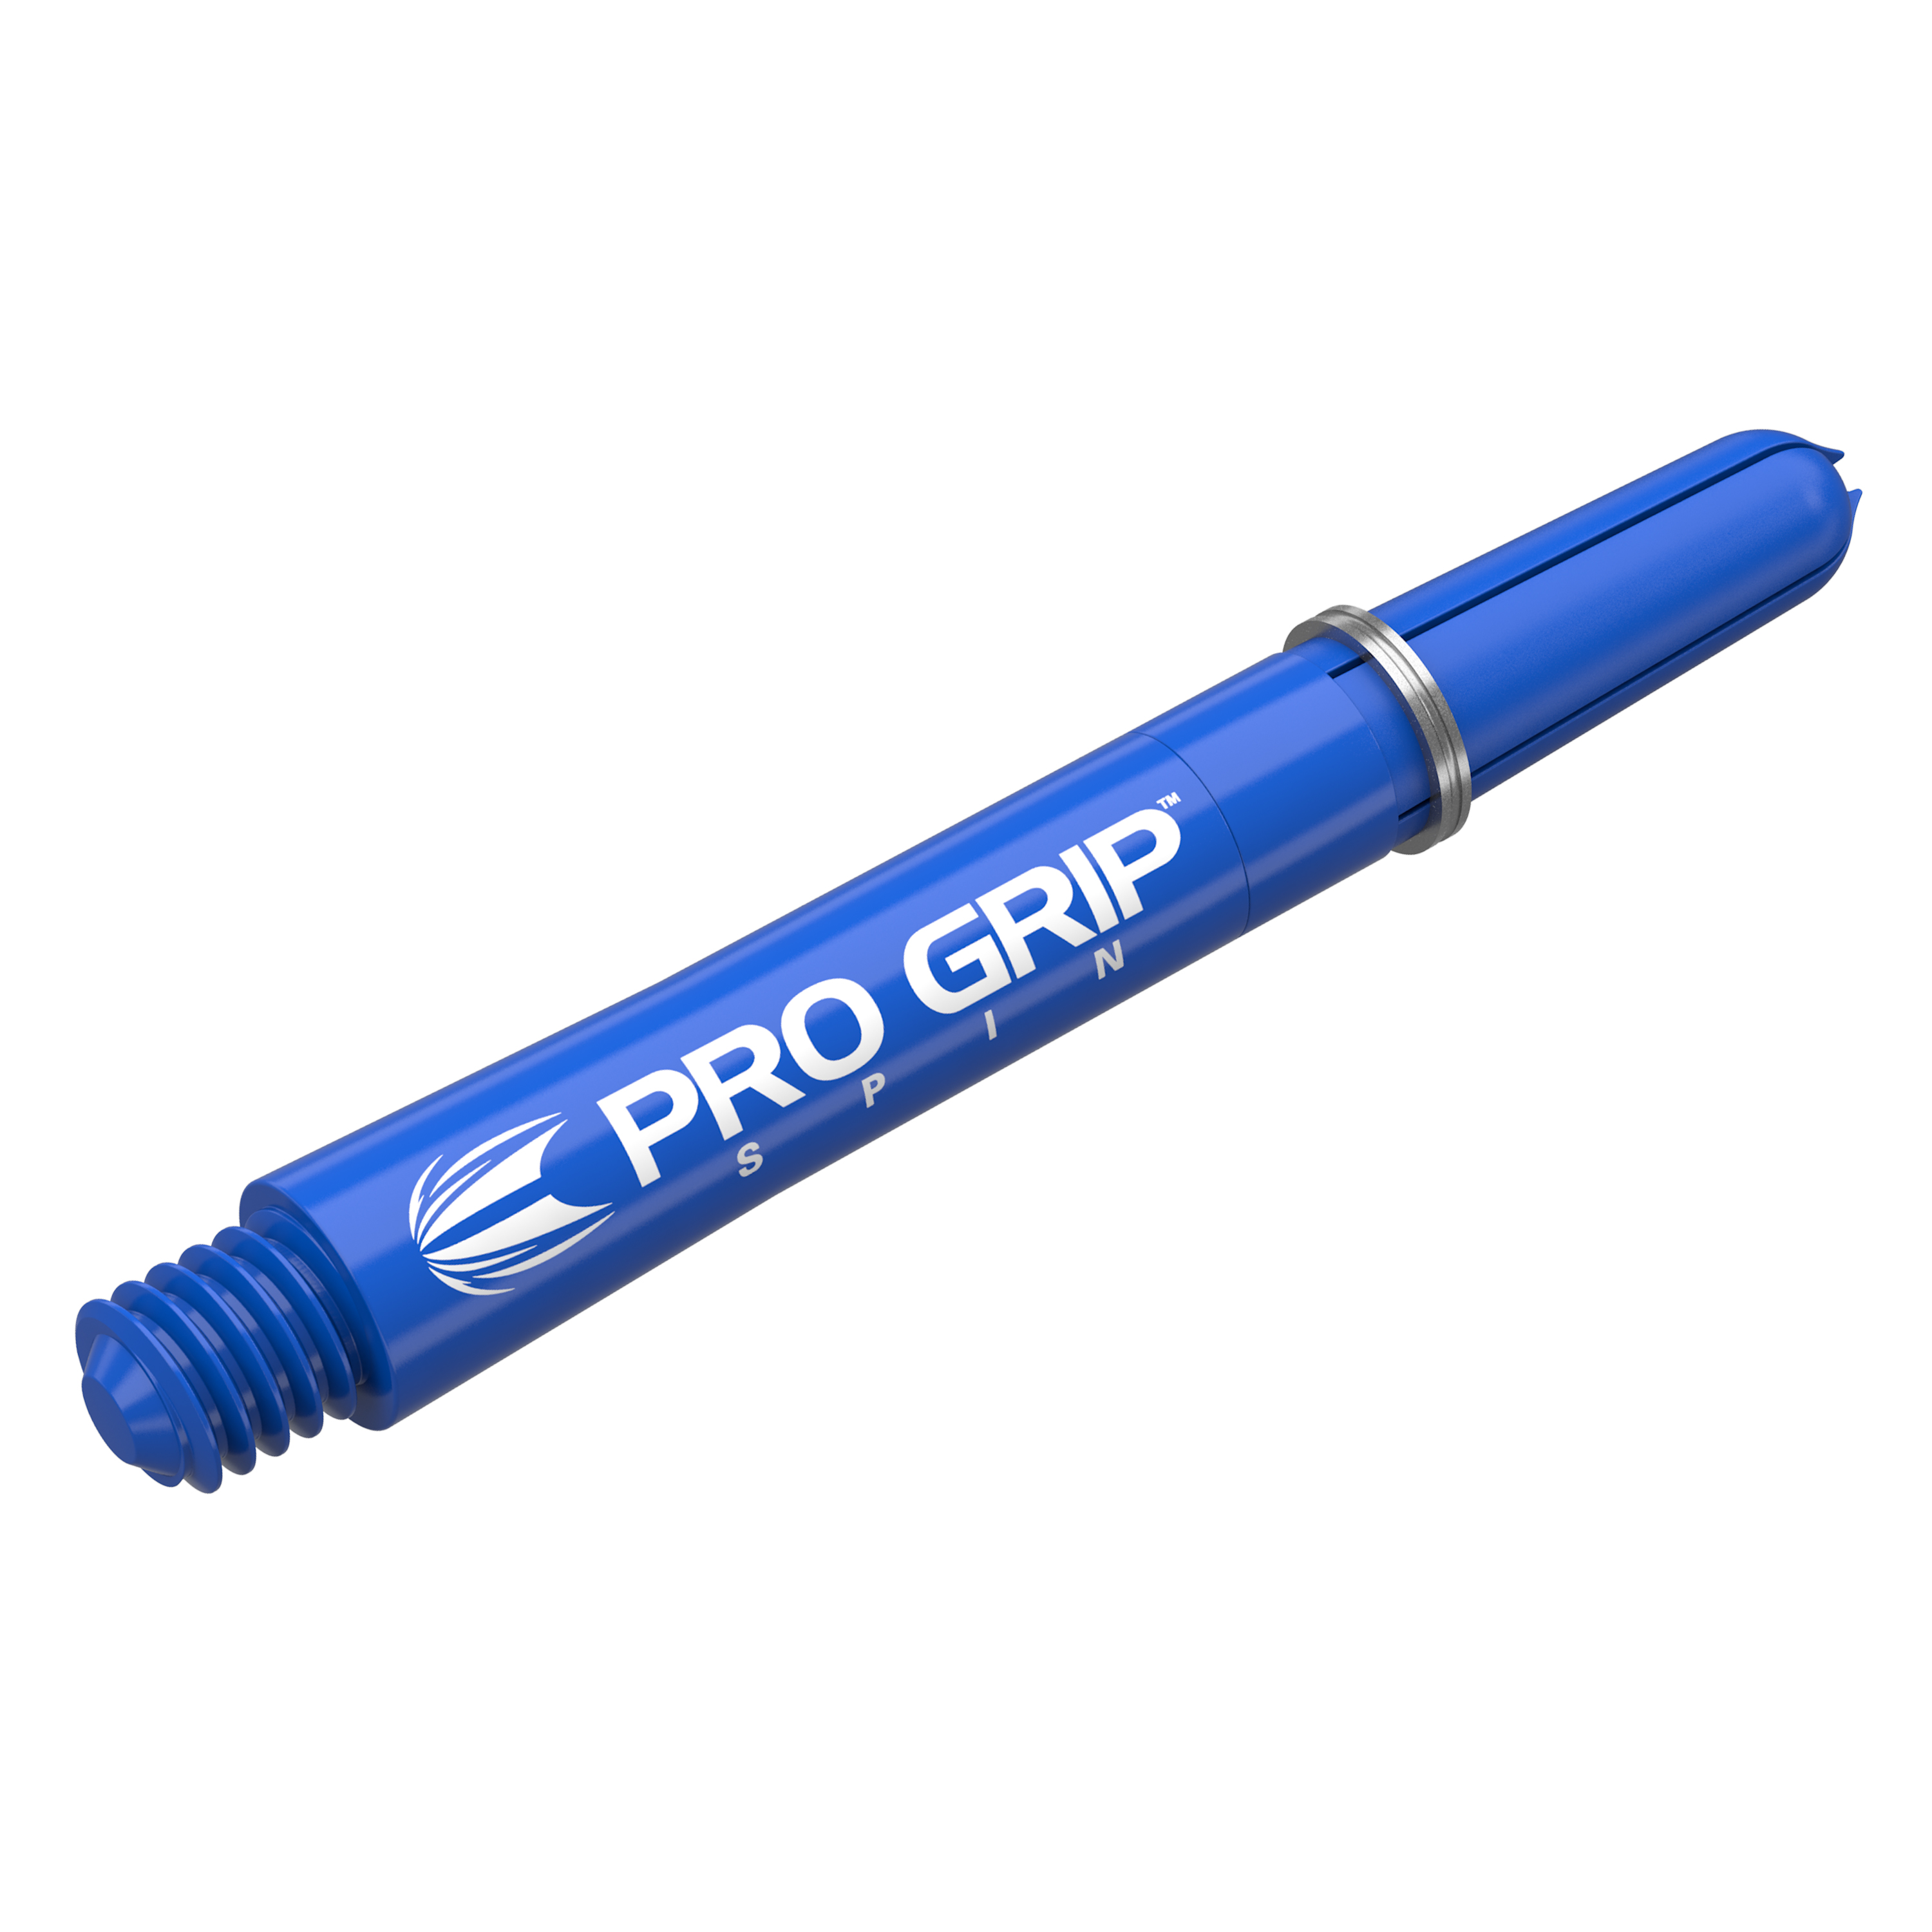 Target Pro Grip Spin Schäfte 3 Sets blau lang